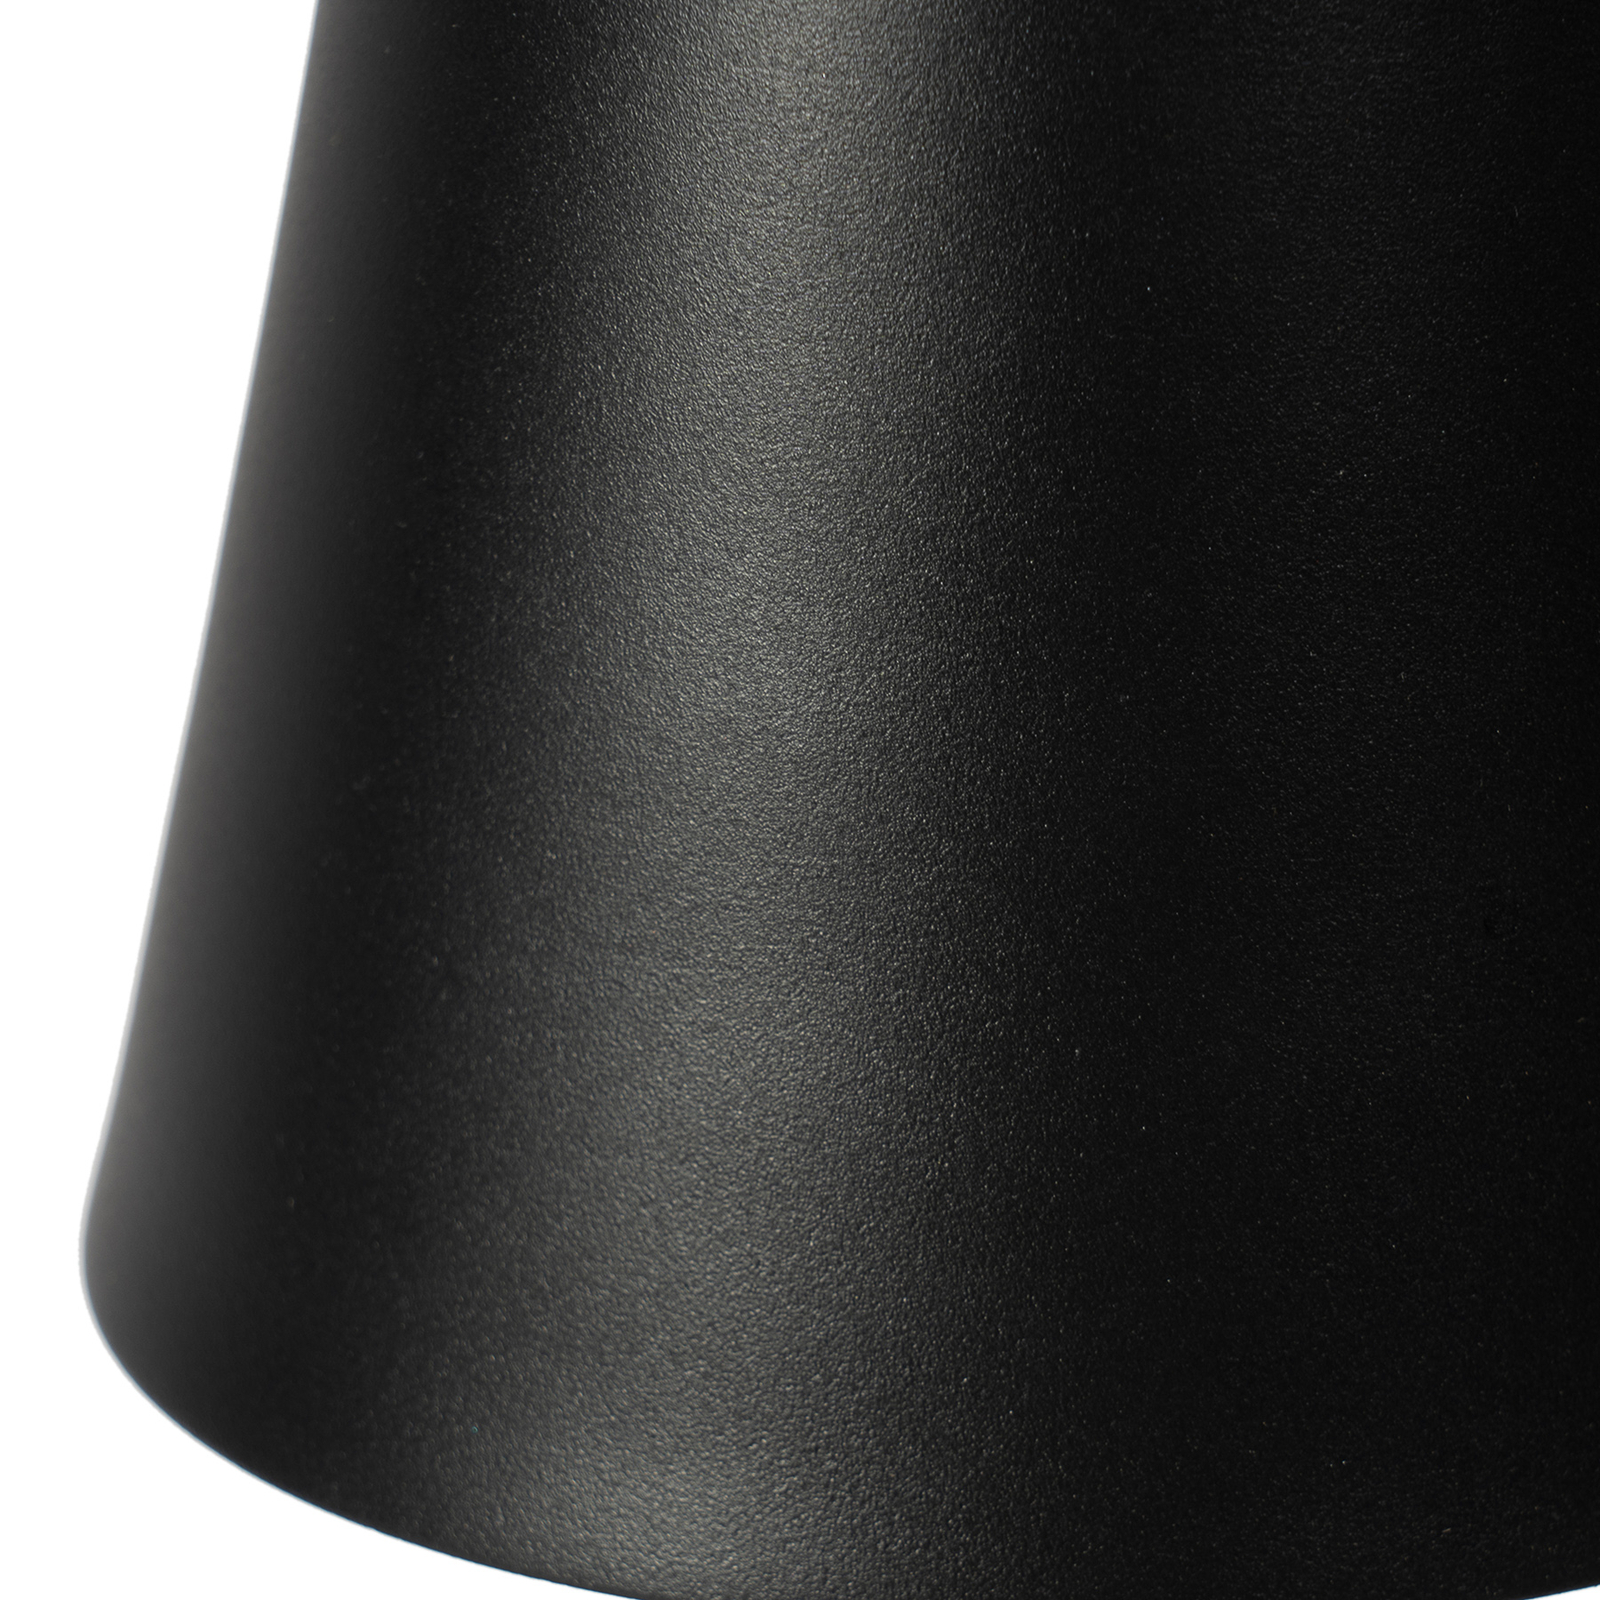 Akumulatorowa lampa stołowa LED Janea, na dwóch nogach, czarna, metalowa